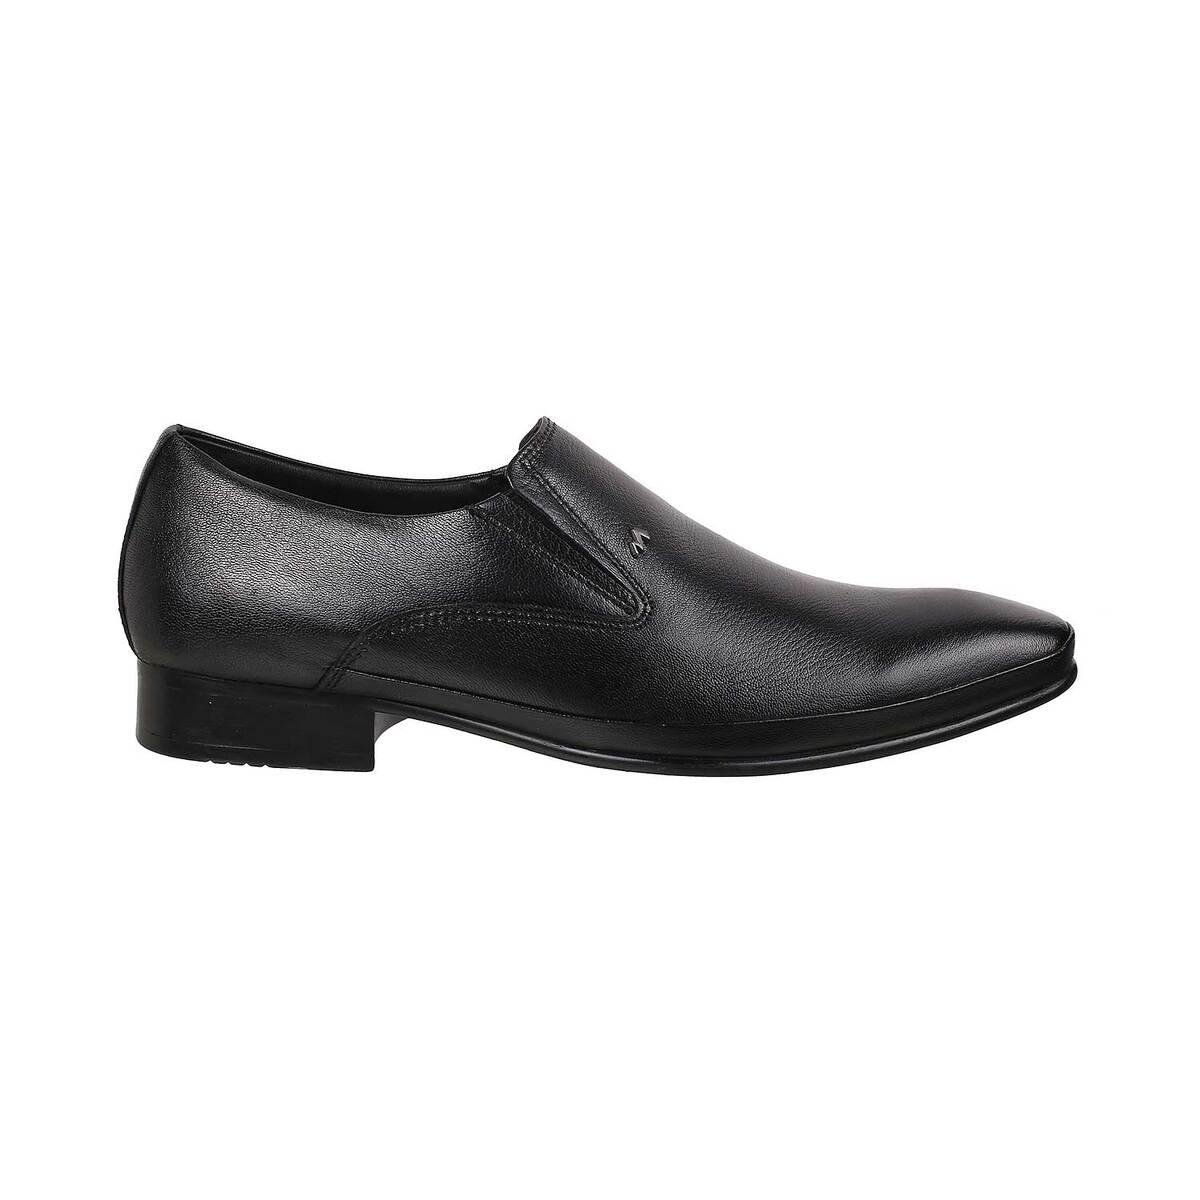 Buy Men Black Formal Moccasin Online | SKU: 19-6588-11-40-Metro Shoes